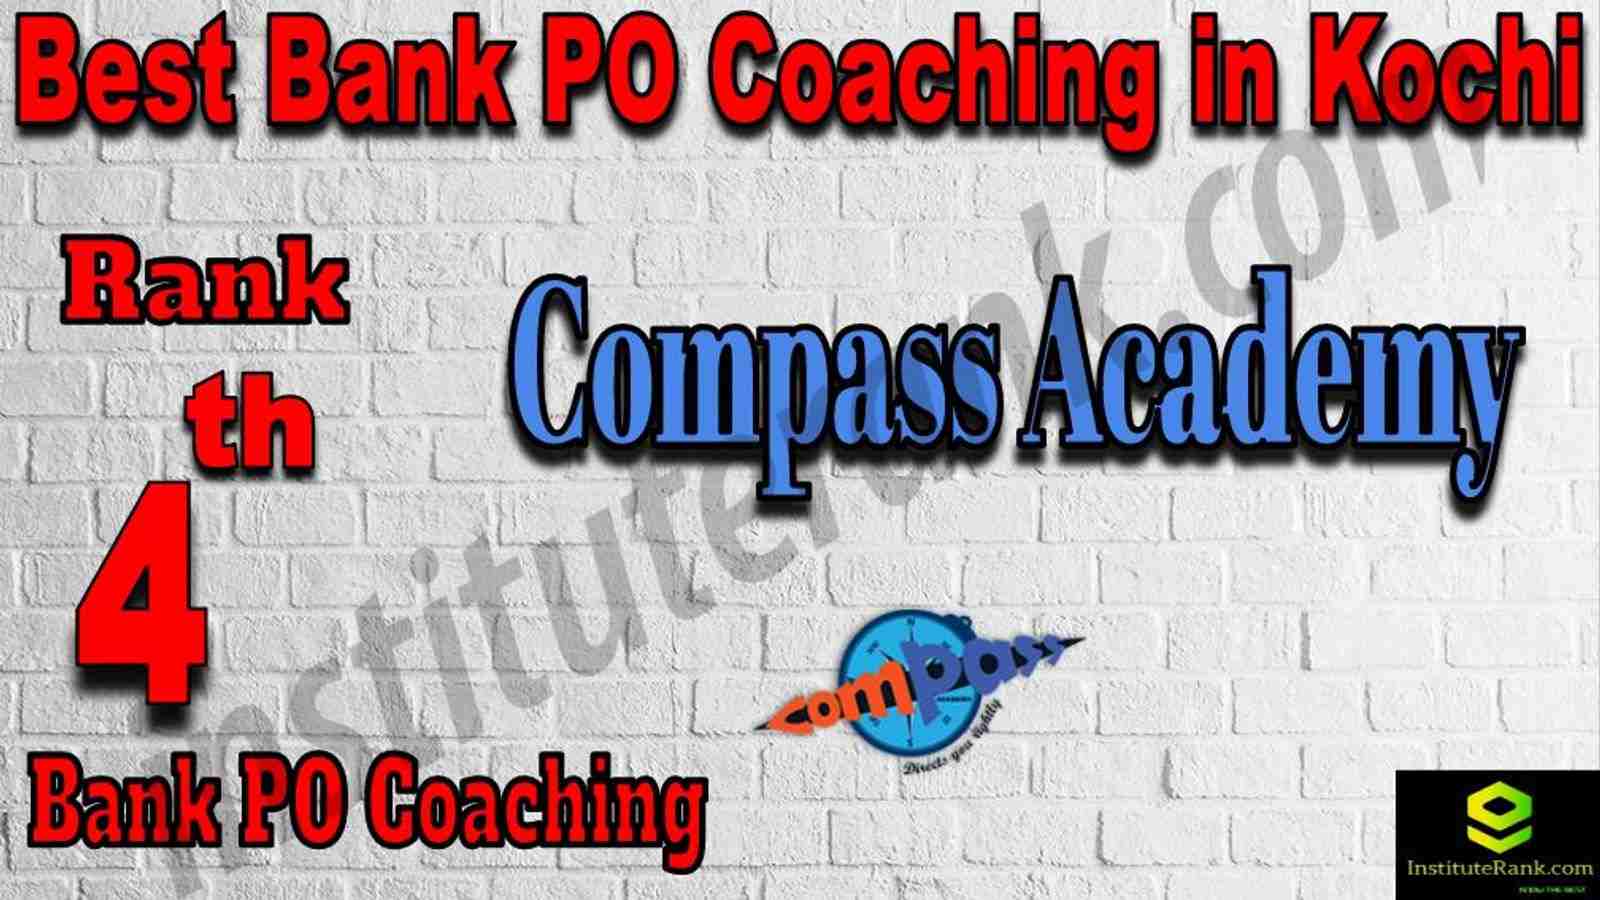 4th Best Bank PO Coaching in Kochi